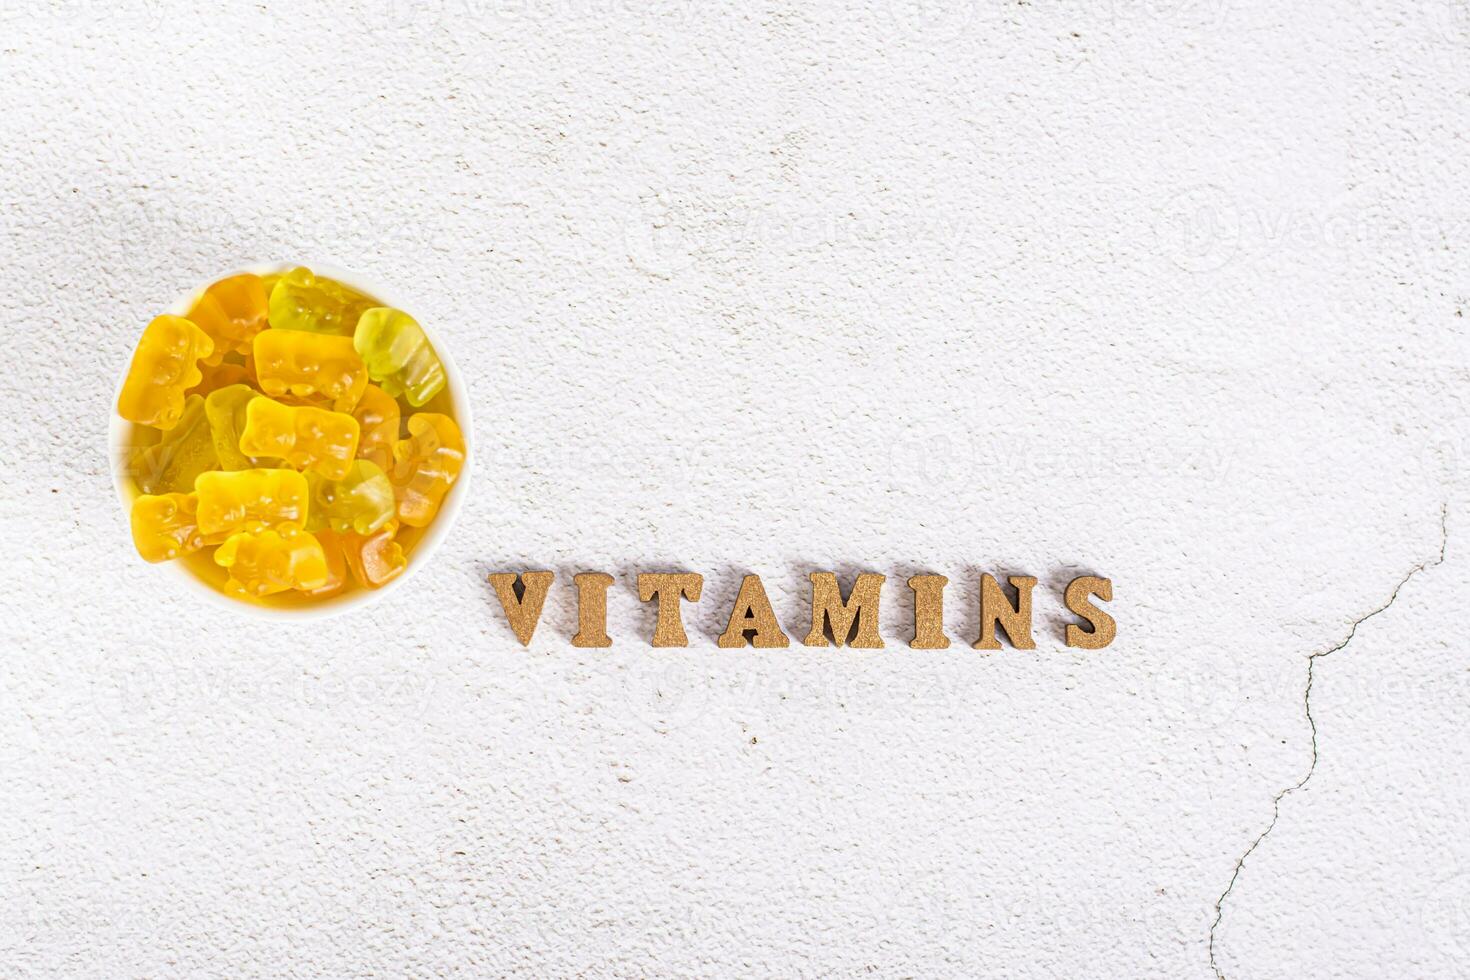 das Wort Vitamine von Briefe und kaubar Vitamine im das bilden von Süßigkeiten Bären im ein Schüssel oben Aussicht foto